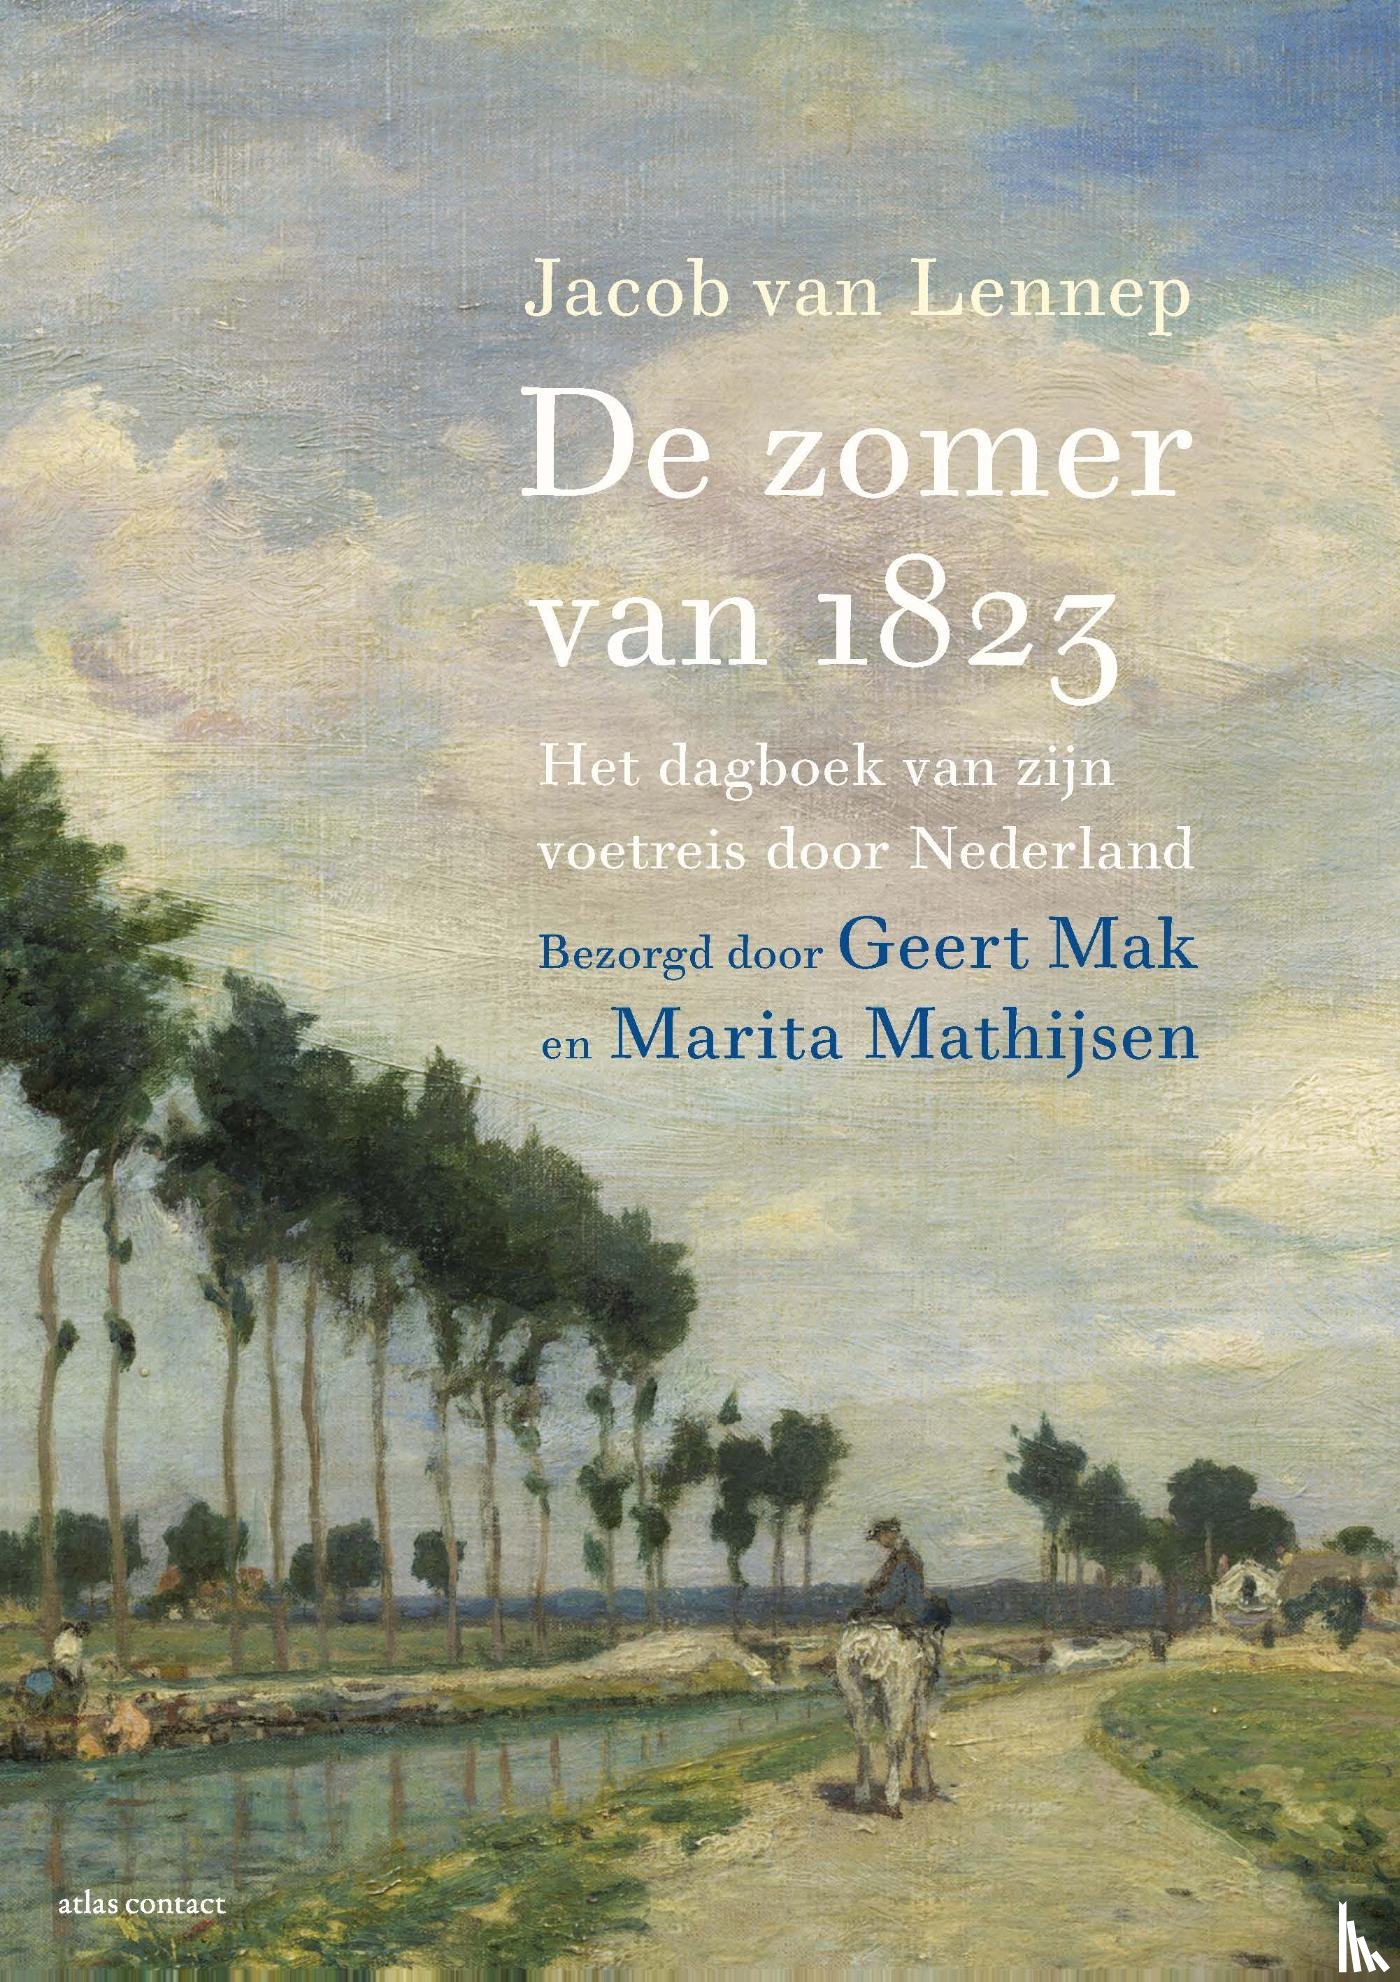 Lennep, Jacob van, Mak, Geert, Mathijsen, Marita - De zomer van 1823